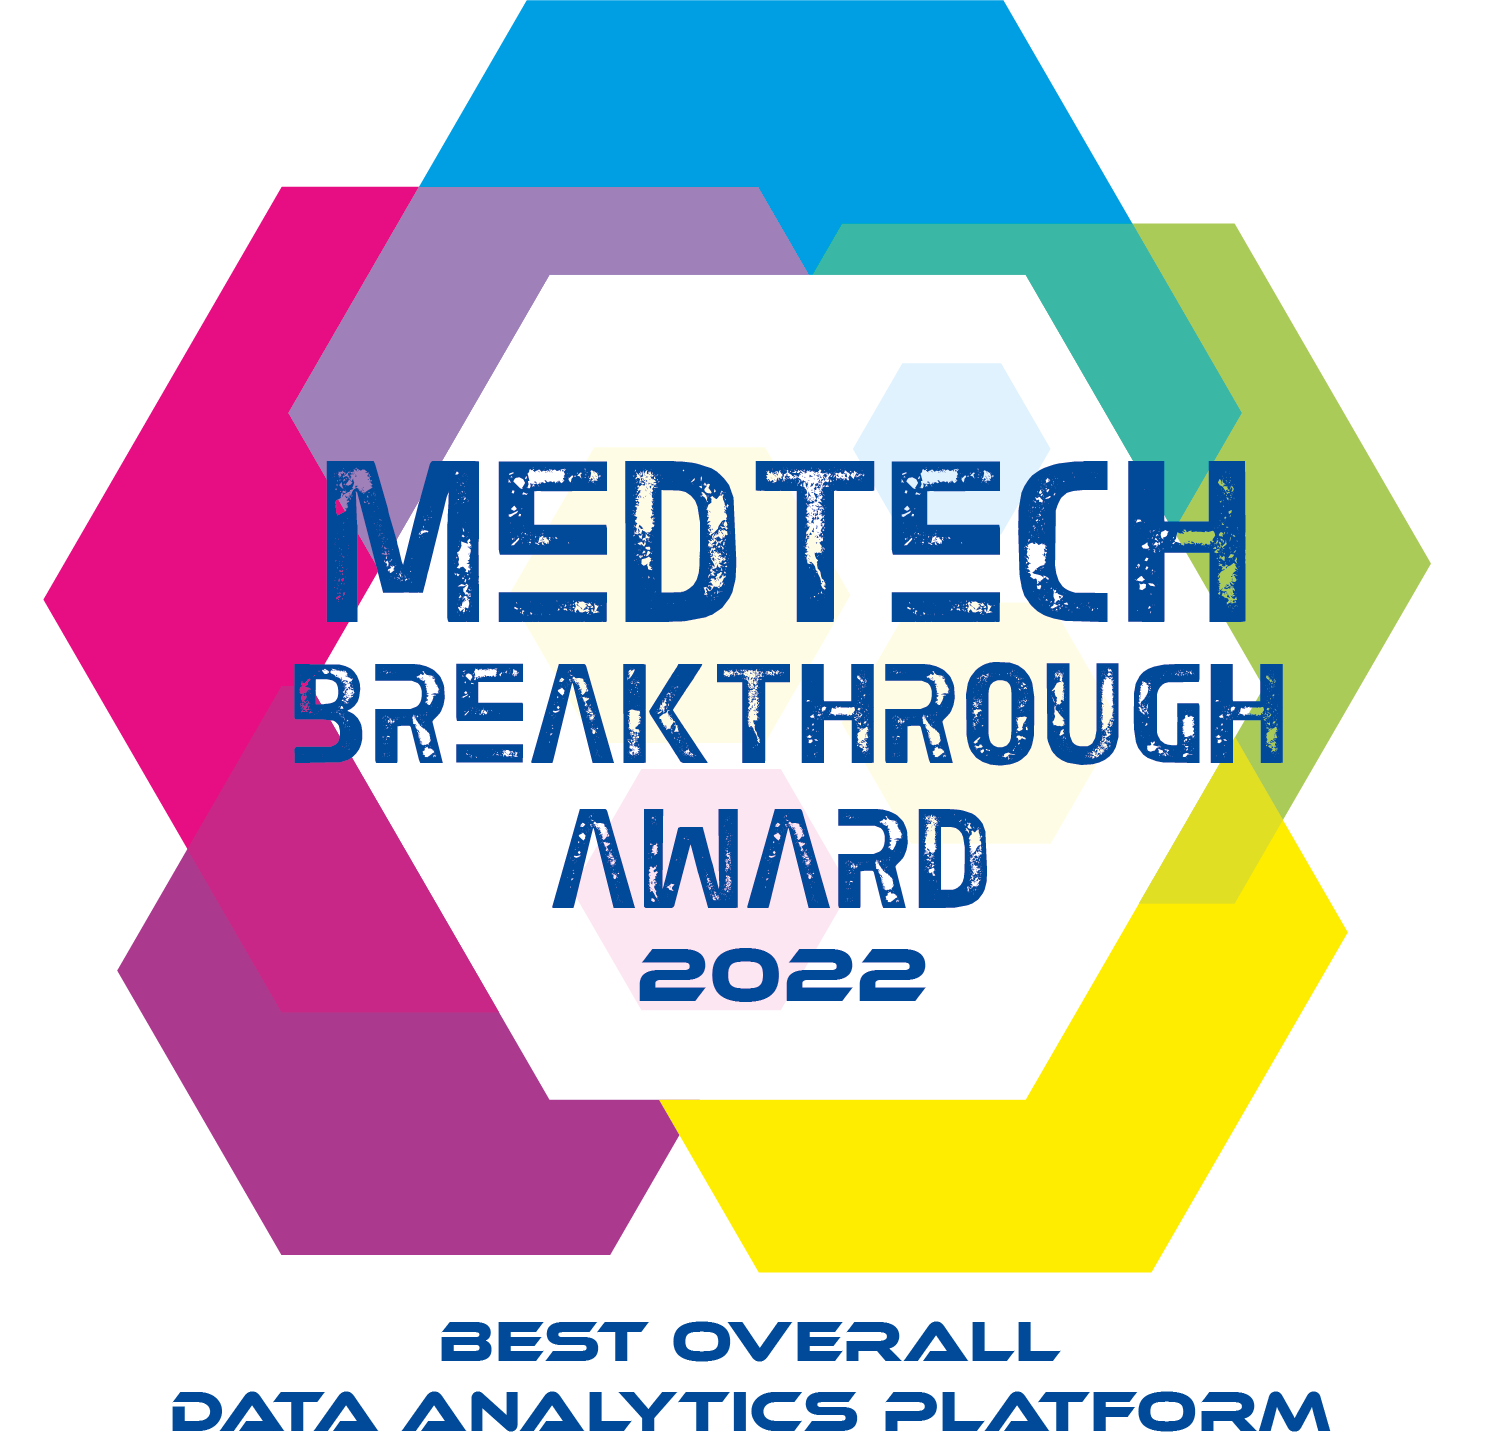 MedTech Breakthrough 2022 Clarify Award image